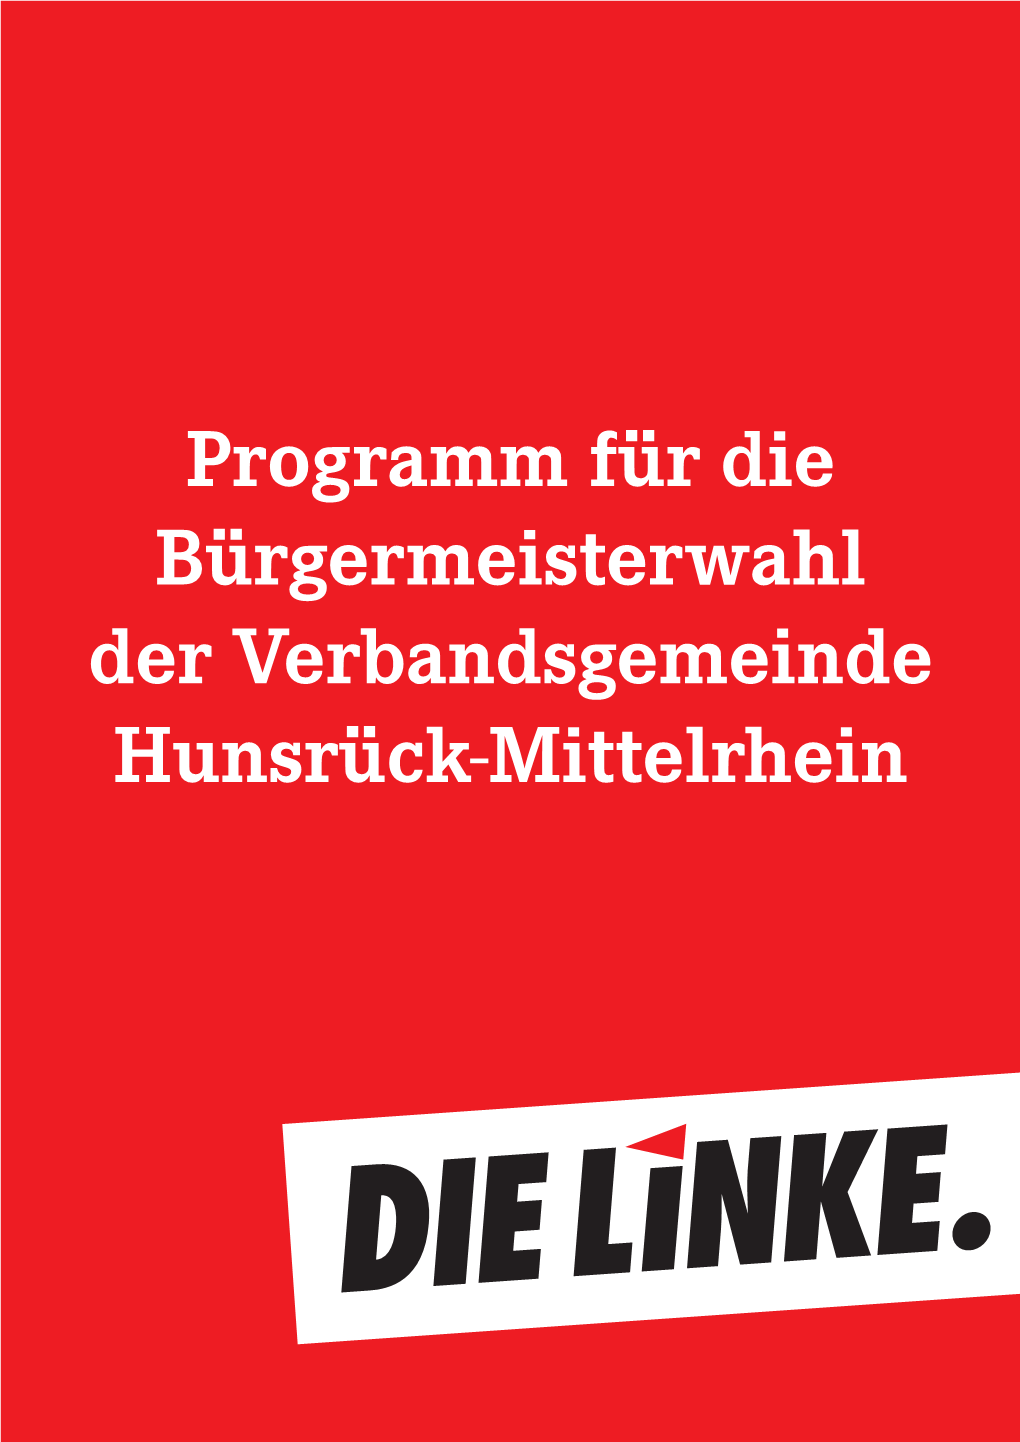 Programm Für Die Bürgermeisterwahl Der Verbandsgemeinde Hunsrück-Mittelrhein Liebe Bürgerinnen Und Bürger